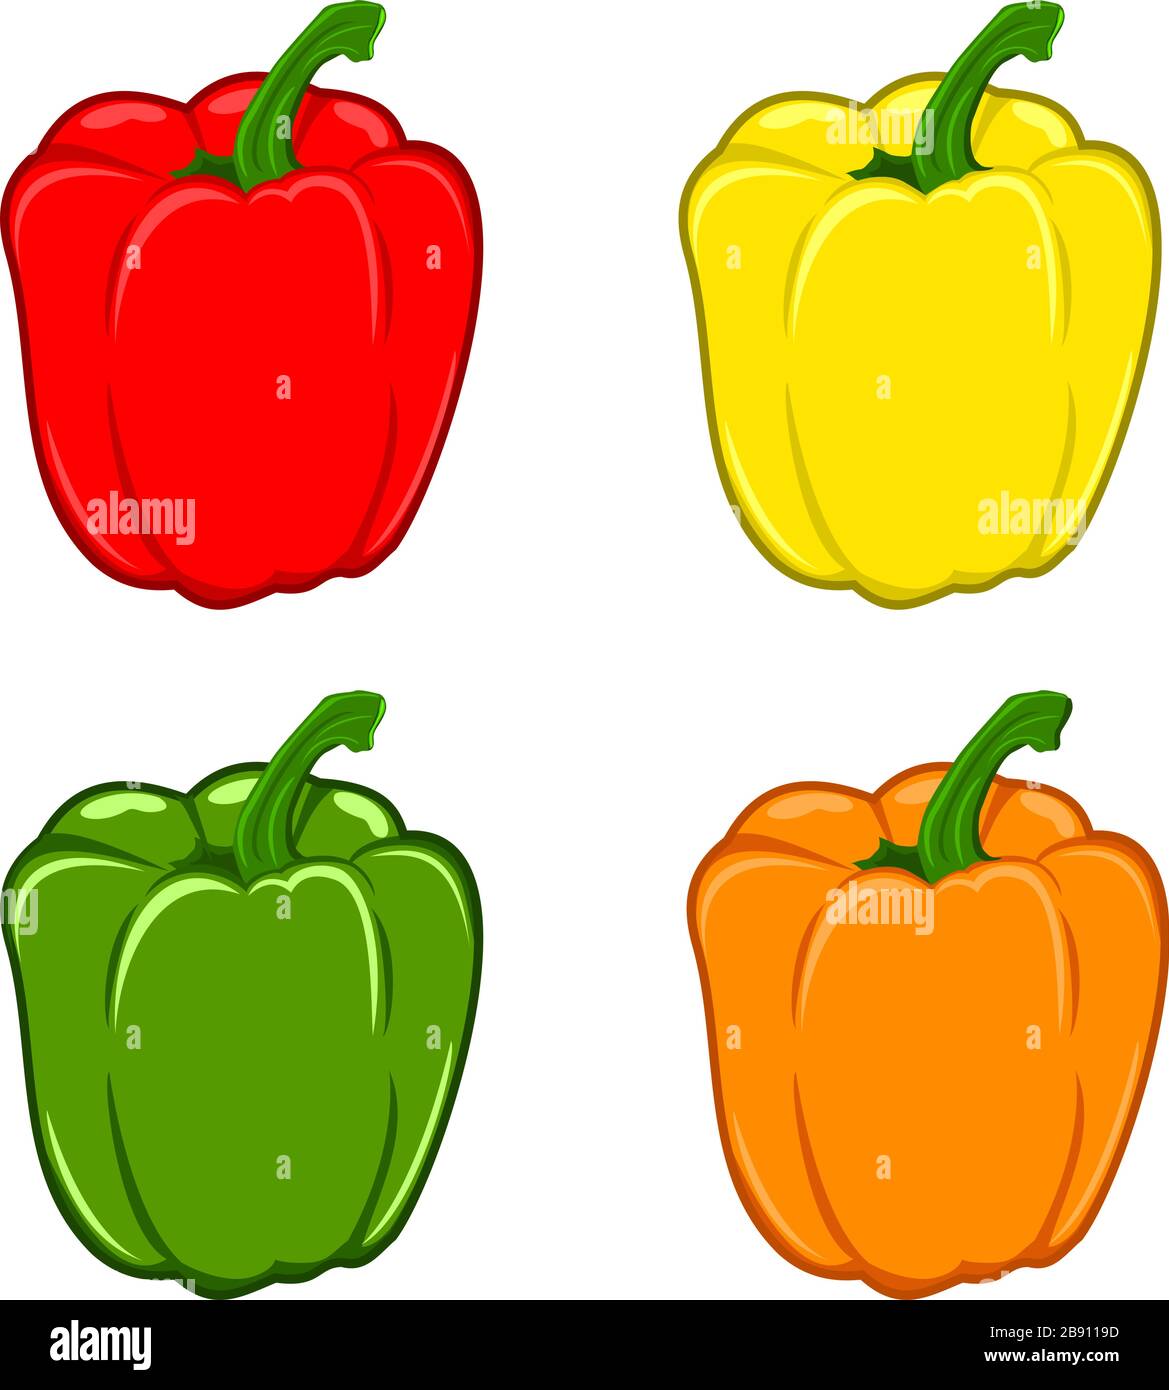 Vektordarstellung von Paprika. Satz mit vier Vektorgrafiken für Paprika. Roter, gelber, grüner und orangefarbener Pfeffer. Stock Vektor